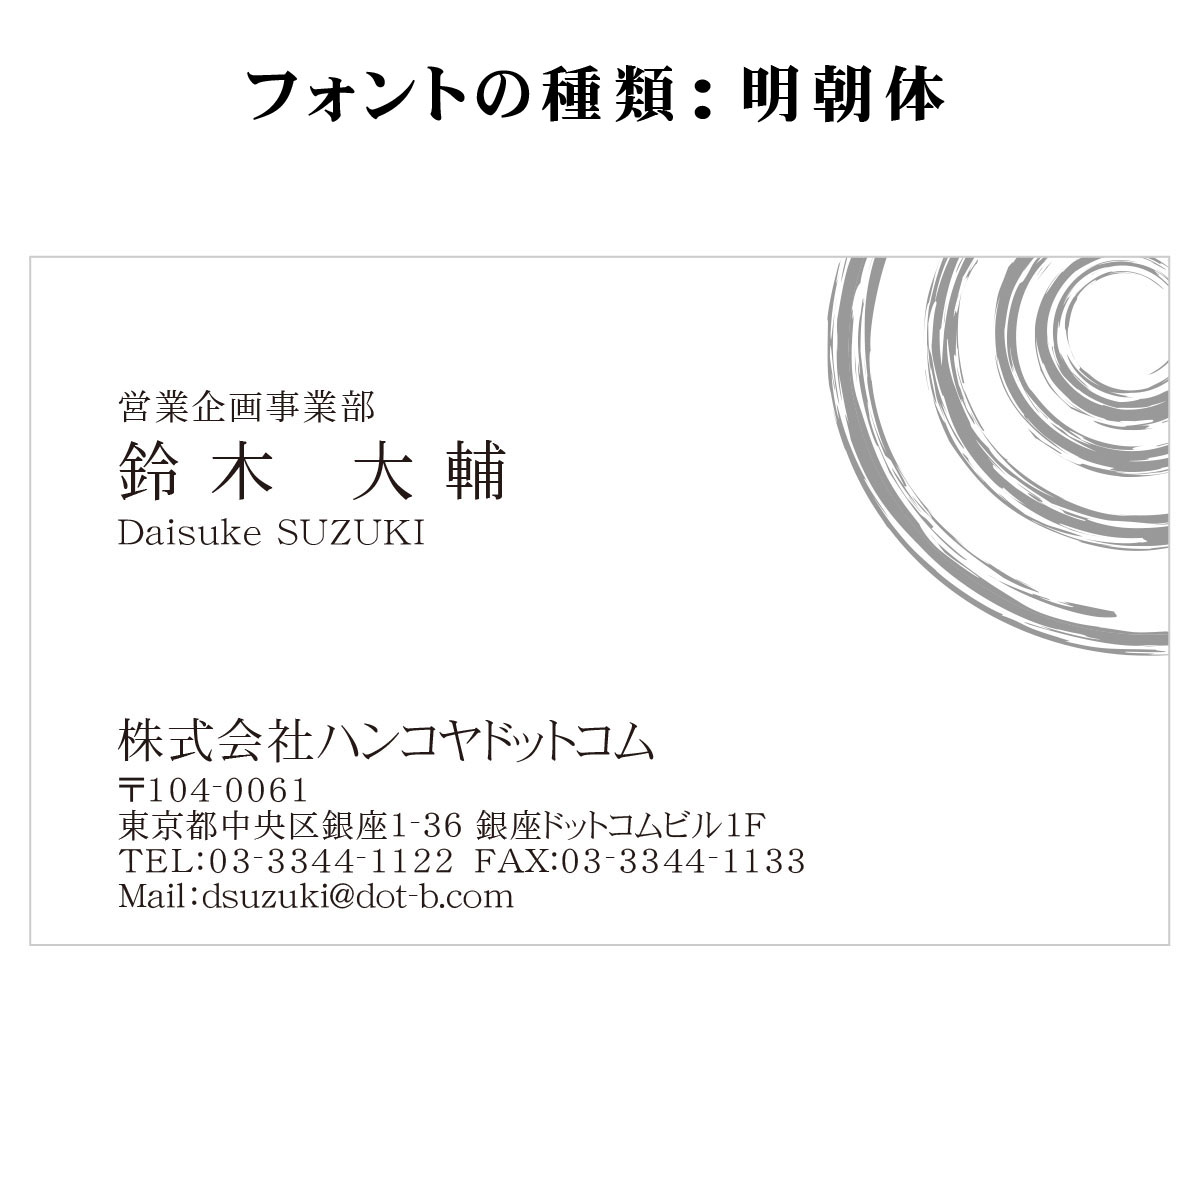 テキスト入稿名刺 ヨコ向き 片面モノクロ印刷 Ai 名刺の作成ならスピード名刺館